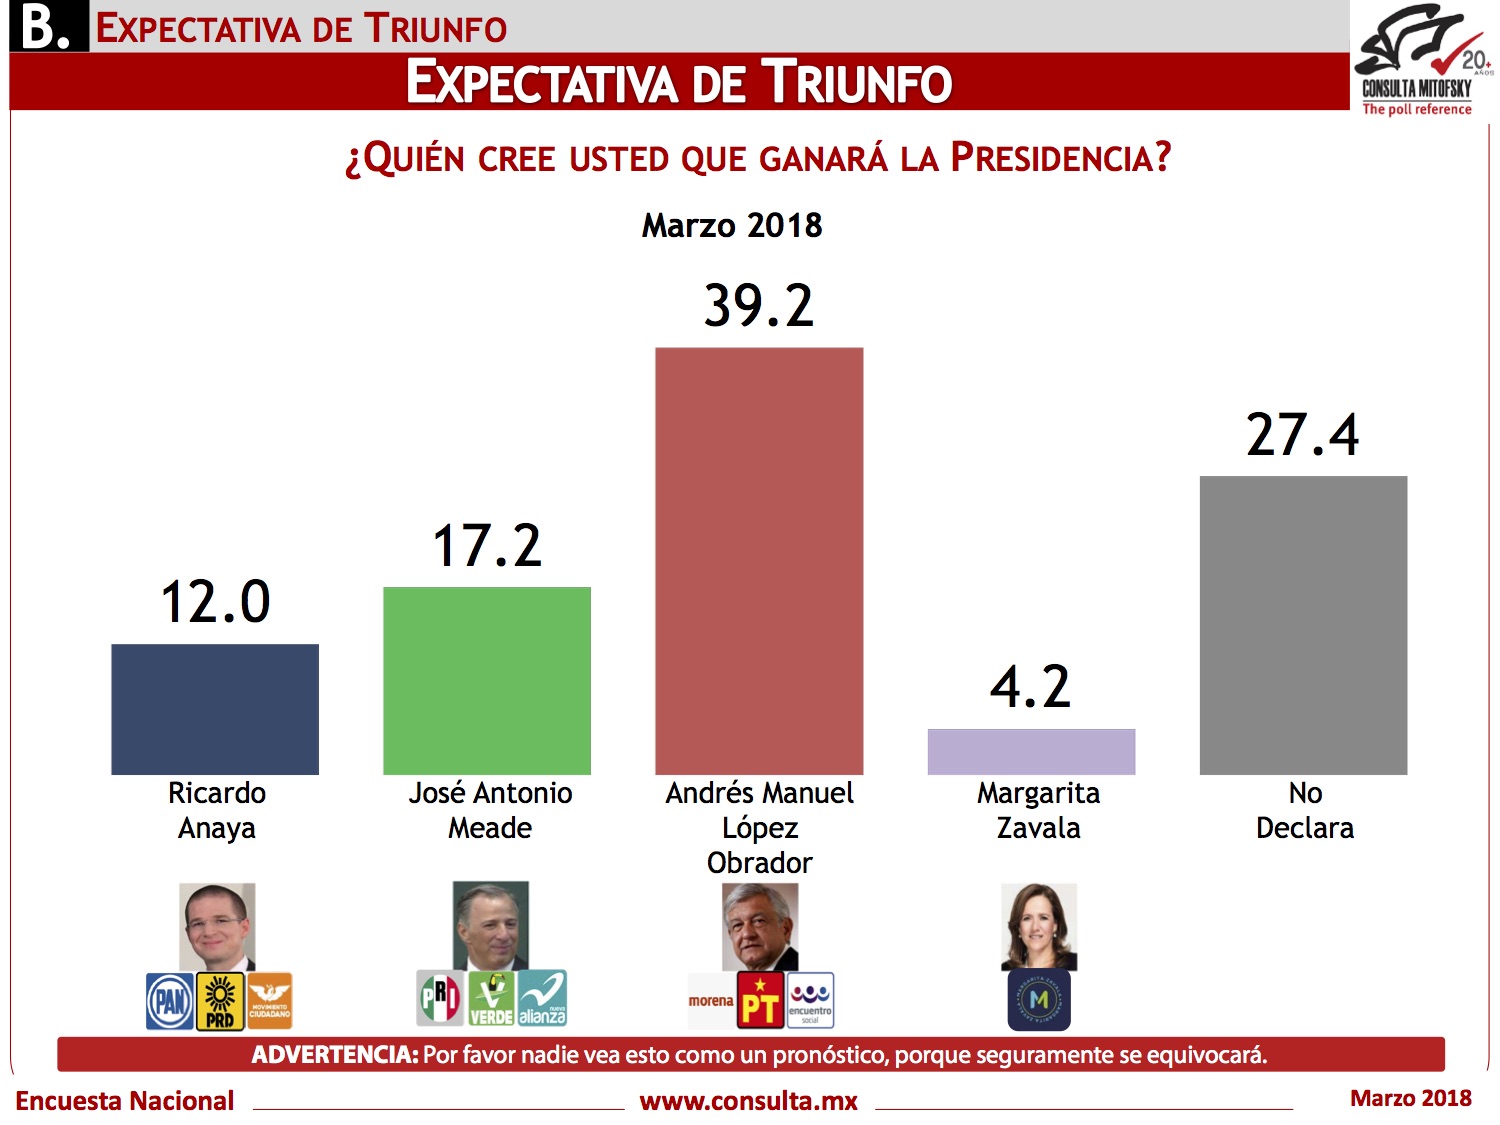 Encuesta de expectativa de triunfo de la Presidencia de México de Consulta Mitofksy, publicada el 23 de marzo de 2018.